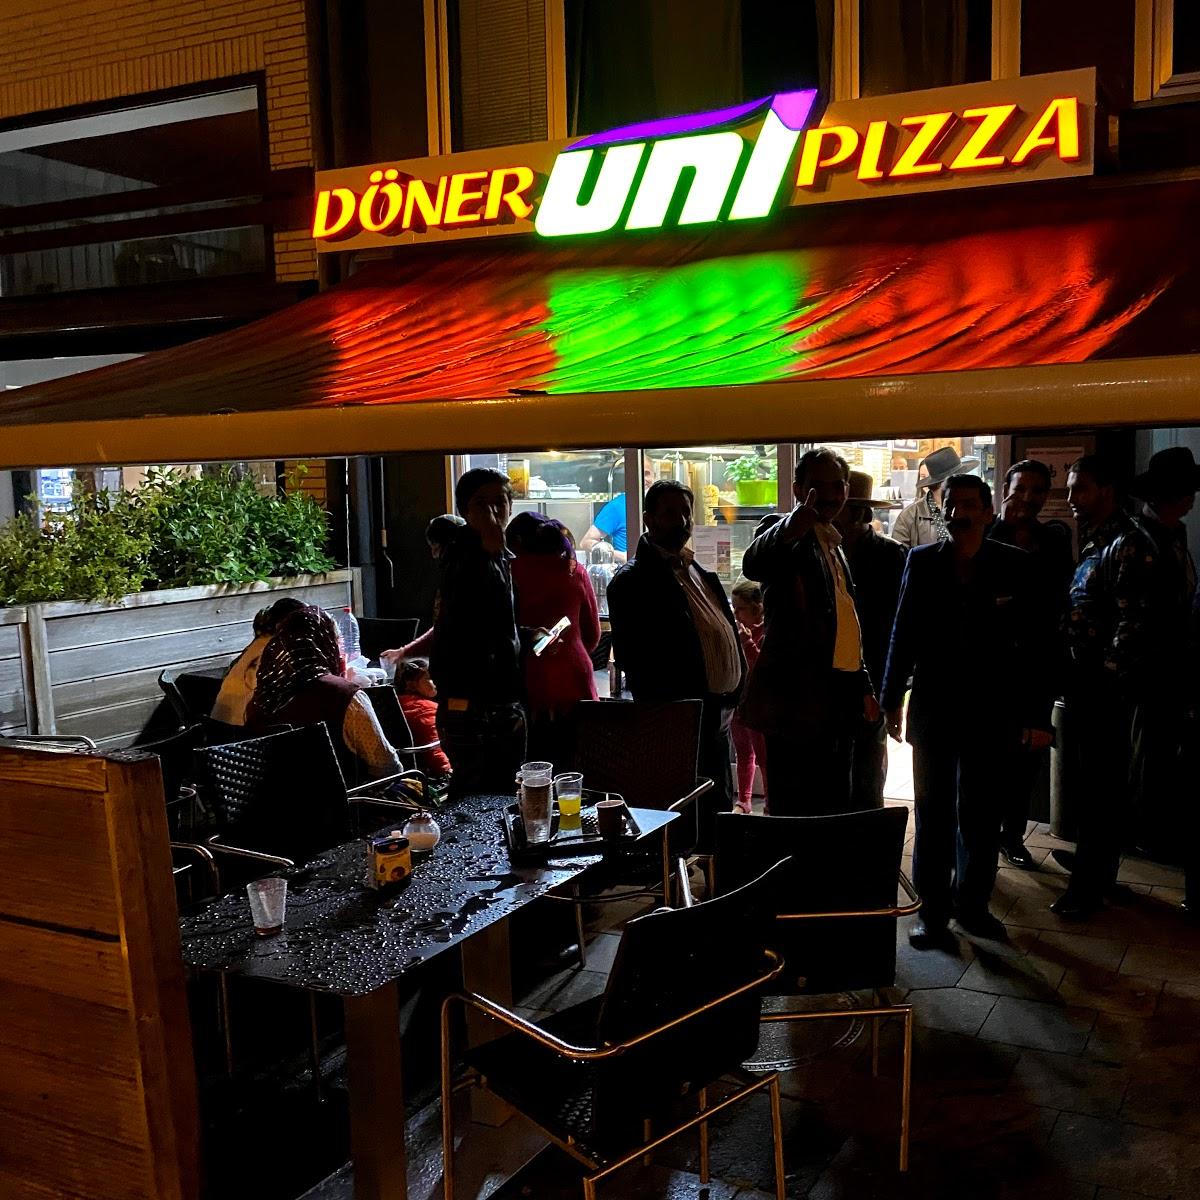 Restaurant "Döner UNI Pizza" in Düsseldorf